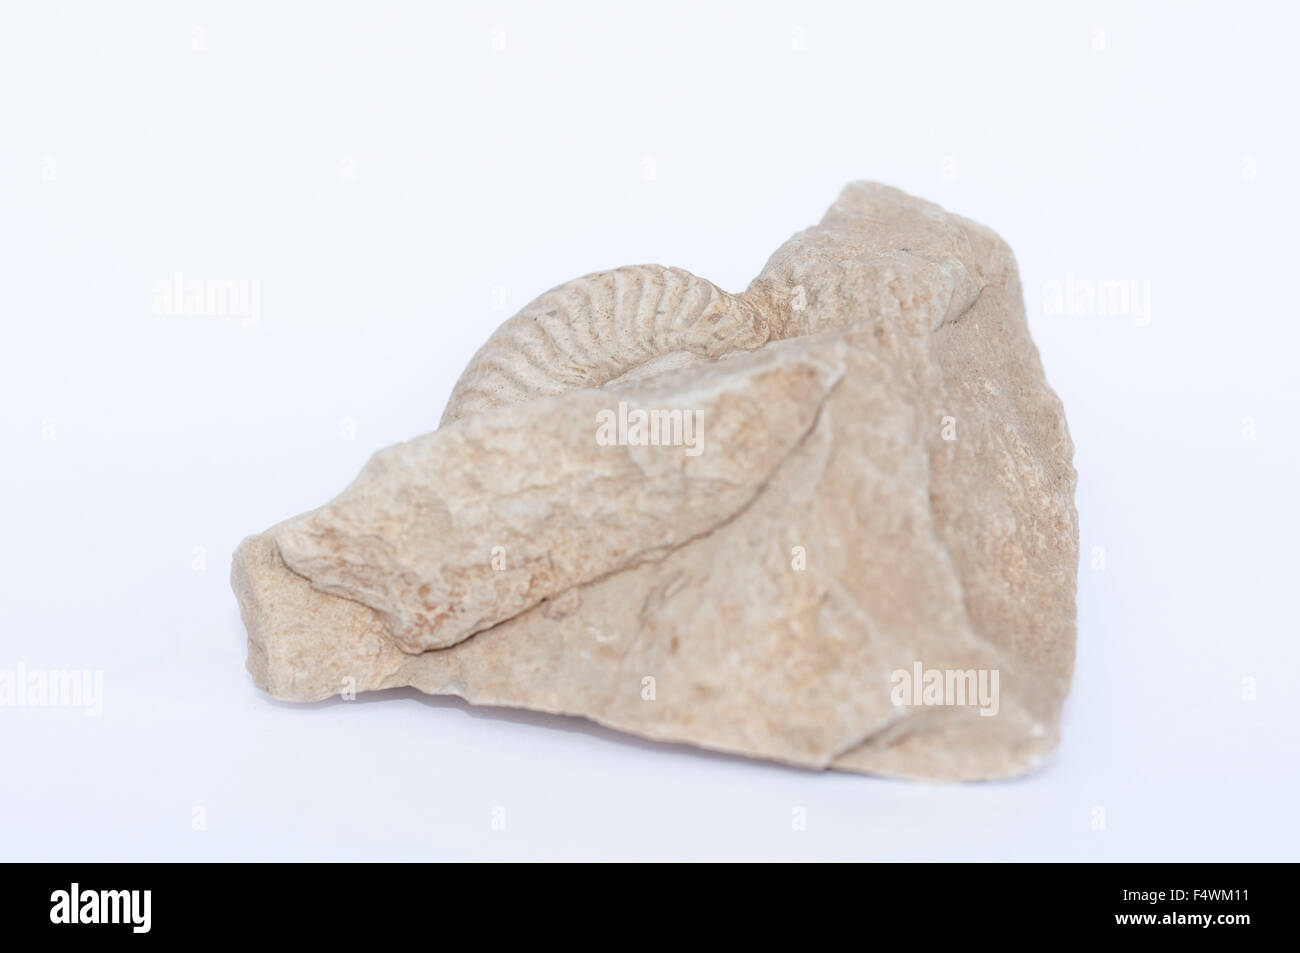 Retrato de fósiles de ammonites, Amaltheus real, incrustado en una roca. Foto de stock